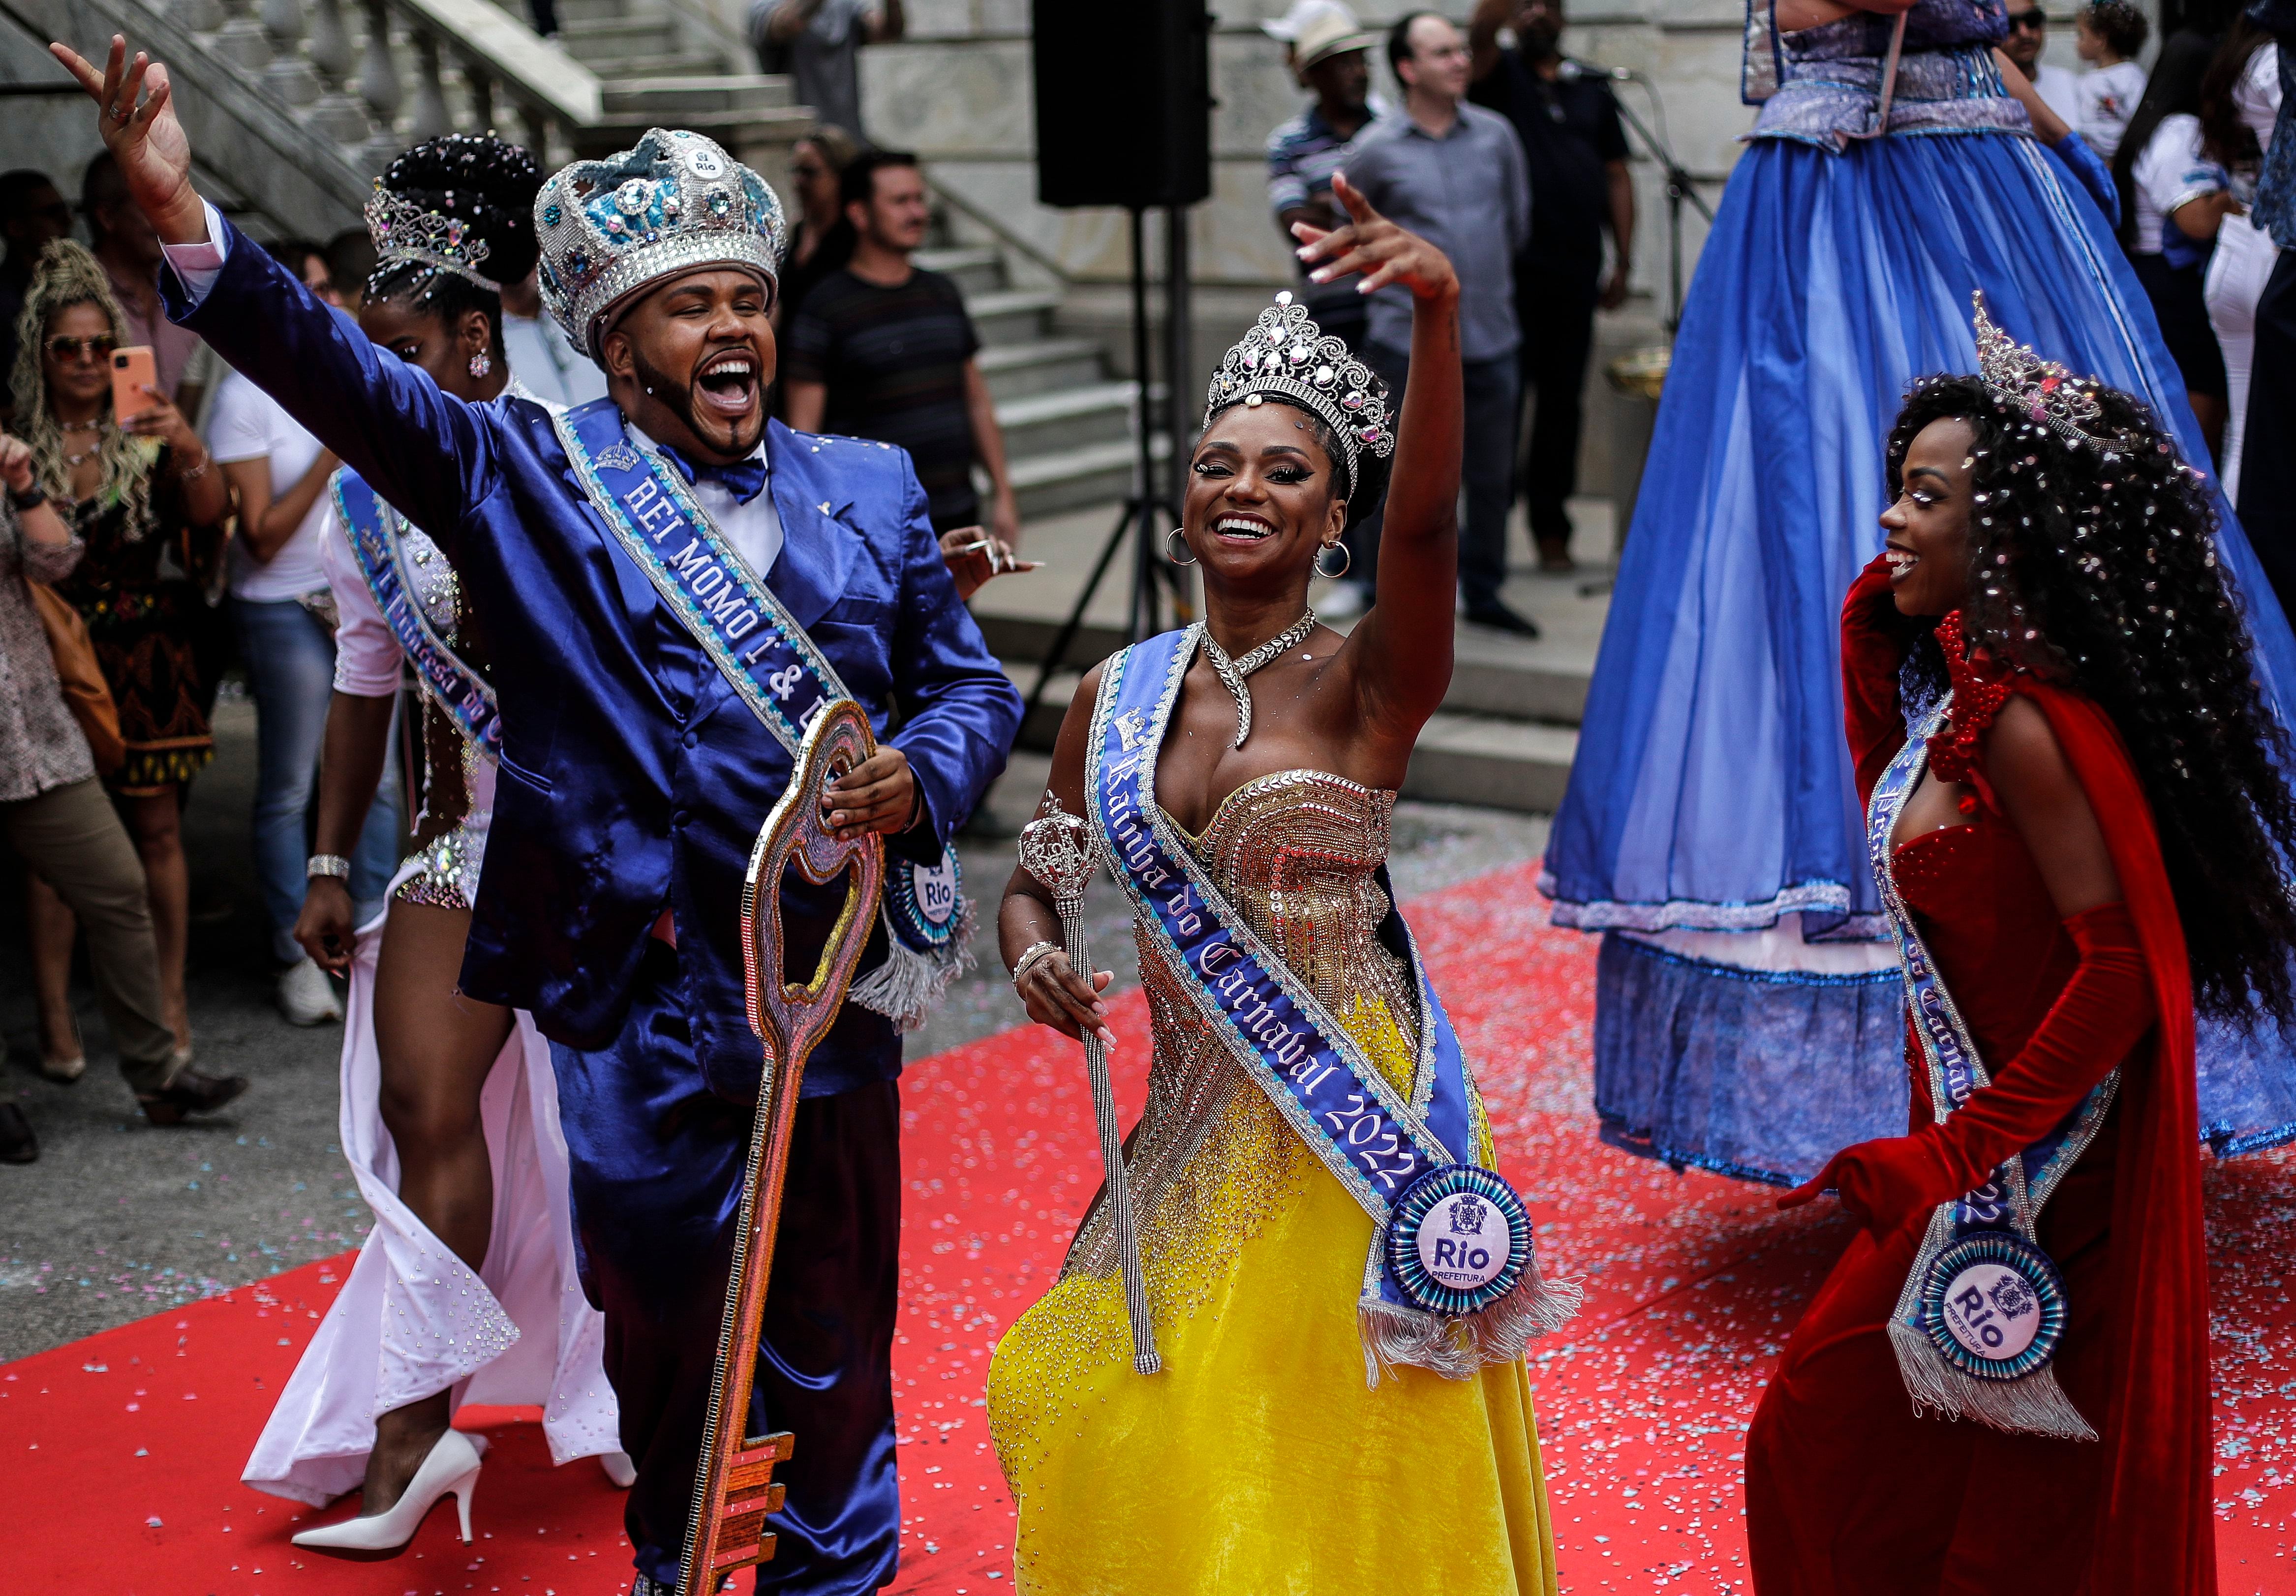 El Rey Momó (i), junto a la reina Bianca Monteiro (c) y la princesa del carnaval, celebra mientras sostiene la llave de la ciudad luego de recibirlas de parte del alcalde de Río, Eduardo Paes (fuera de cuadro), este 20 de abril de 2022, durante la inauguración oficial del Carnaval 2022, en Río de Janeiro (Brasil).